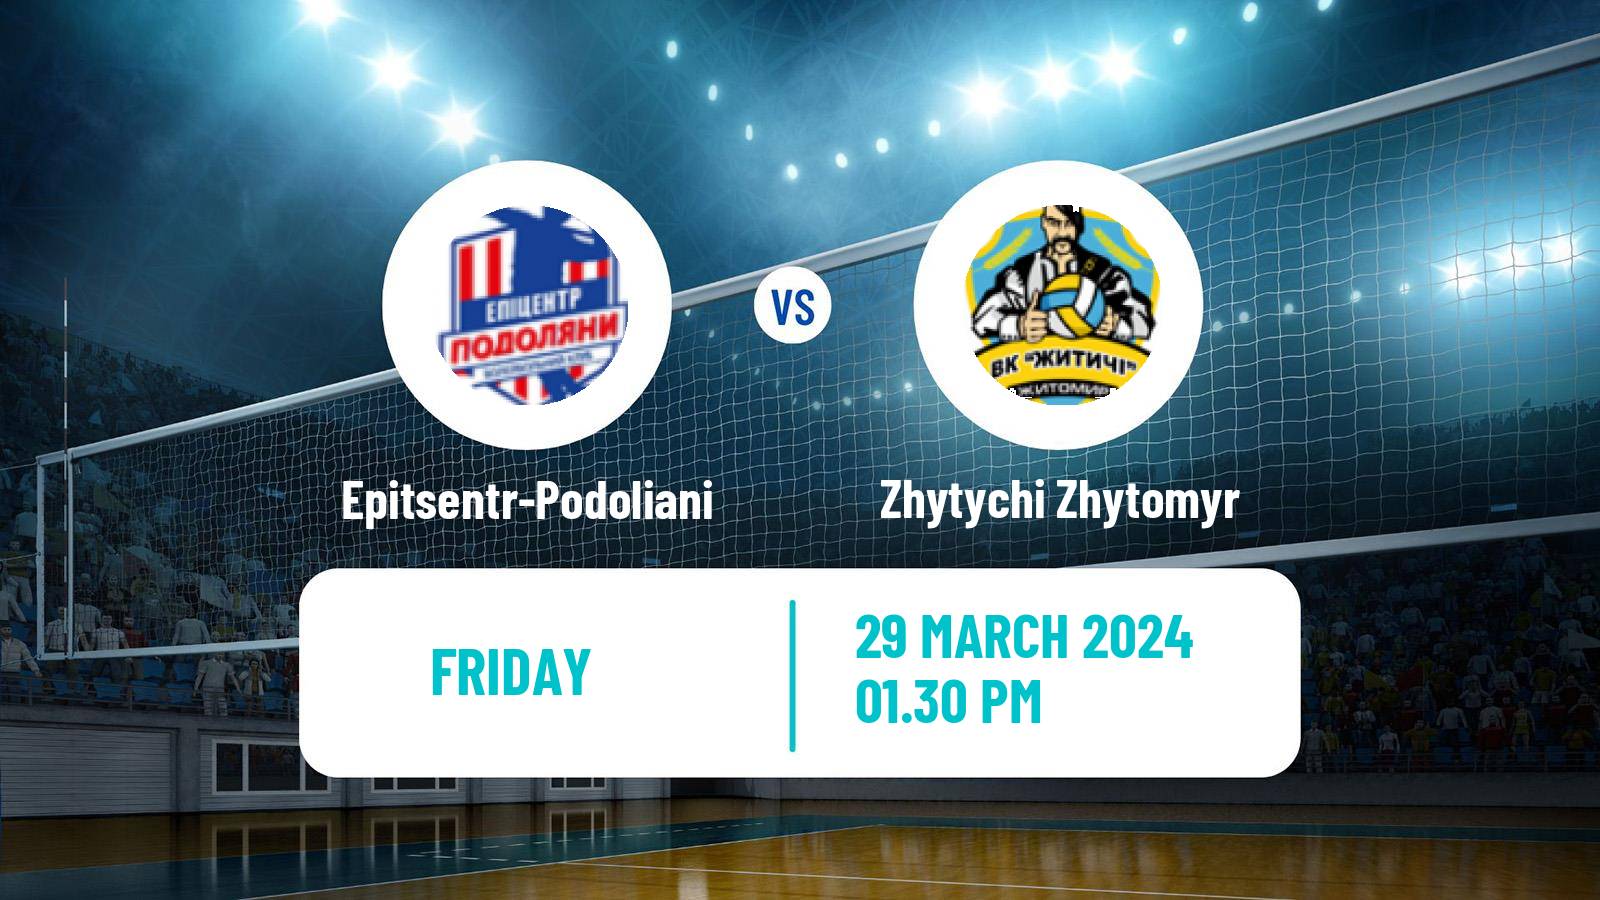 Volleyball Ukrainian Super League Volleyball Epitsentr-Podoliani - Zhytychi Zhytomyr